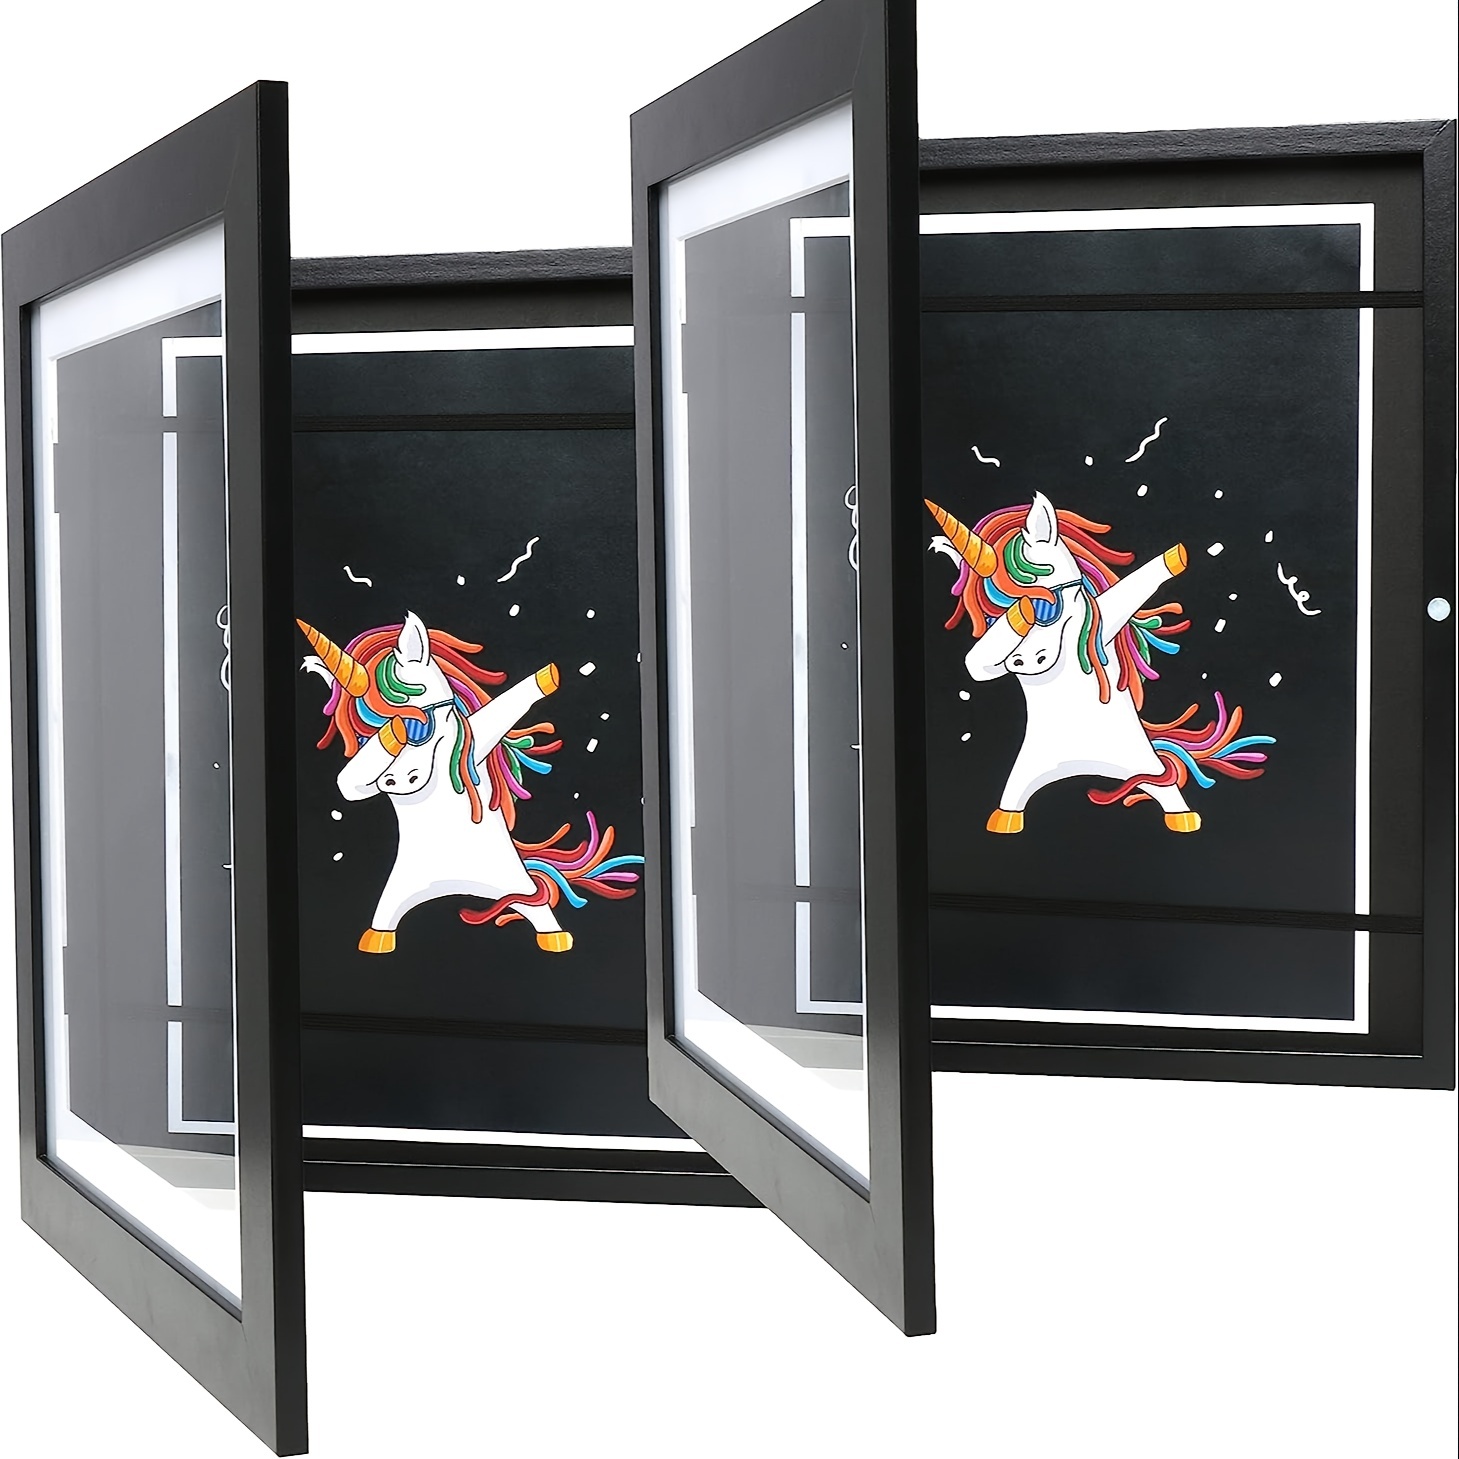 Cadre magnétique avec ouverture frontale, en verre trempé pour projets  artistiques pour enfants, pour dessin, peinture, image sur papier A4 -  AliExpress